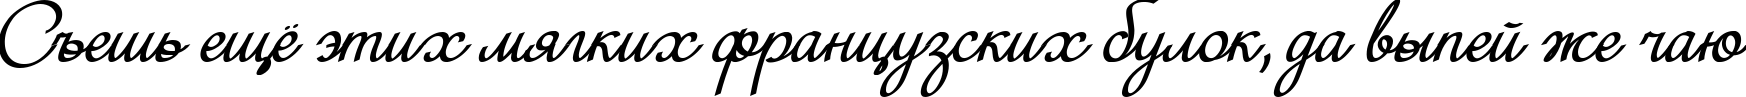 Пример написания шрифтом Mini текста на русском